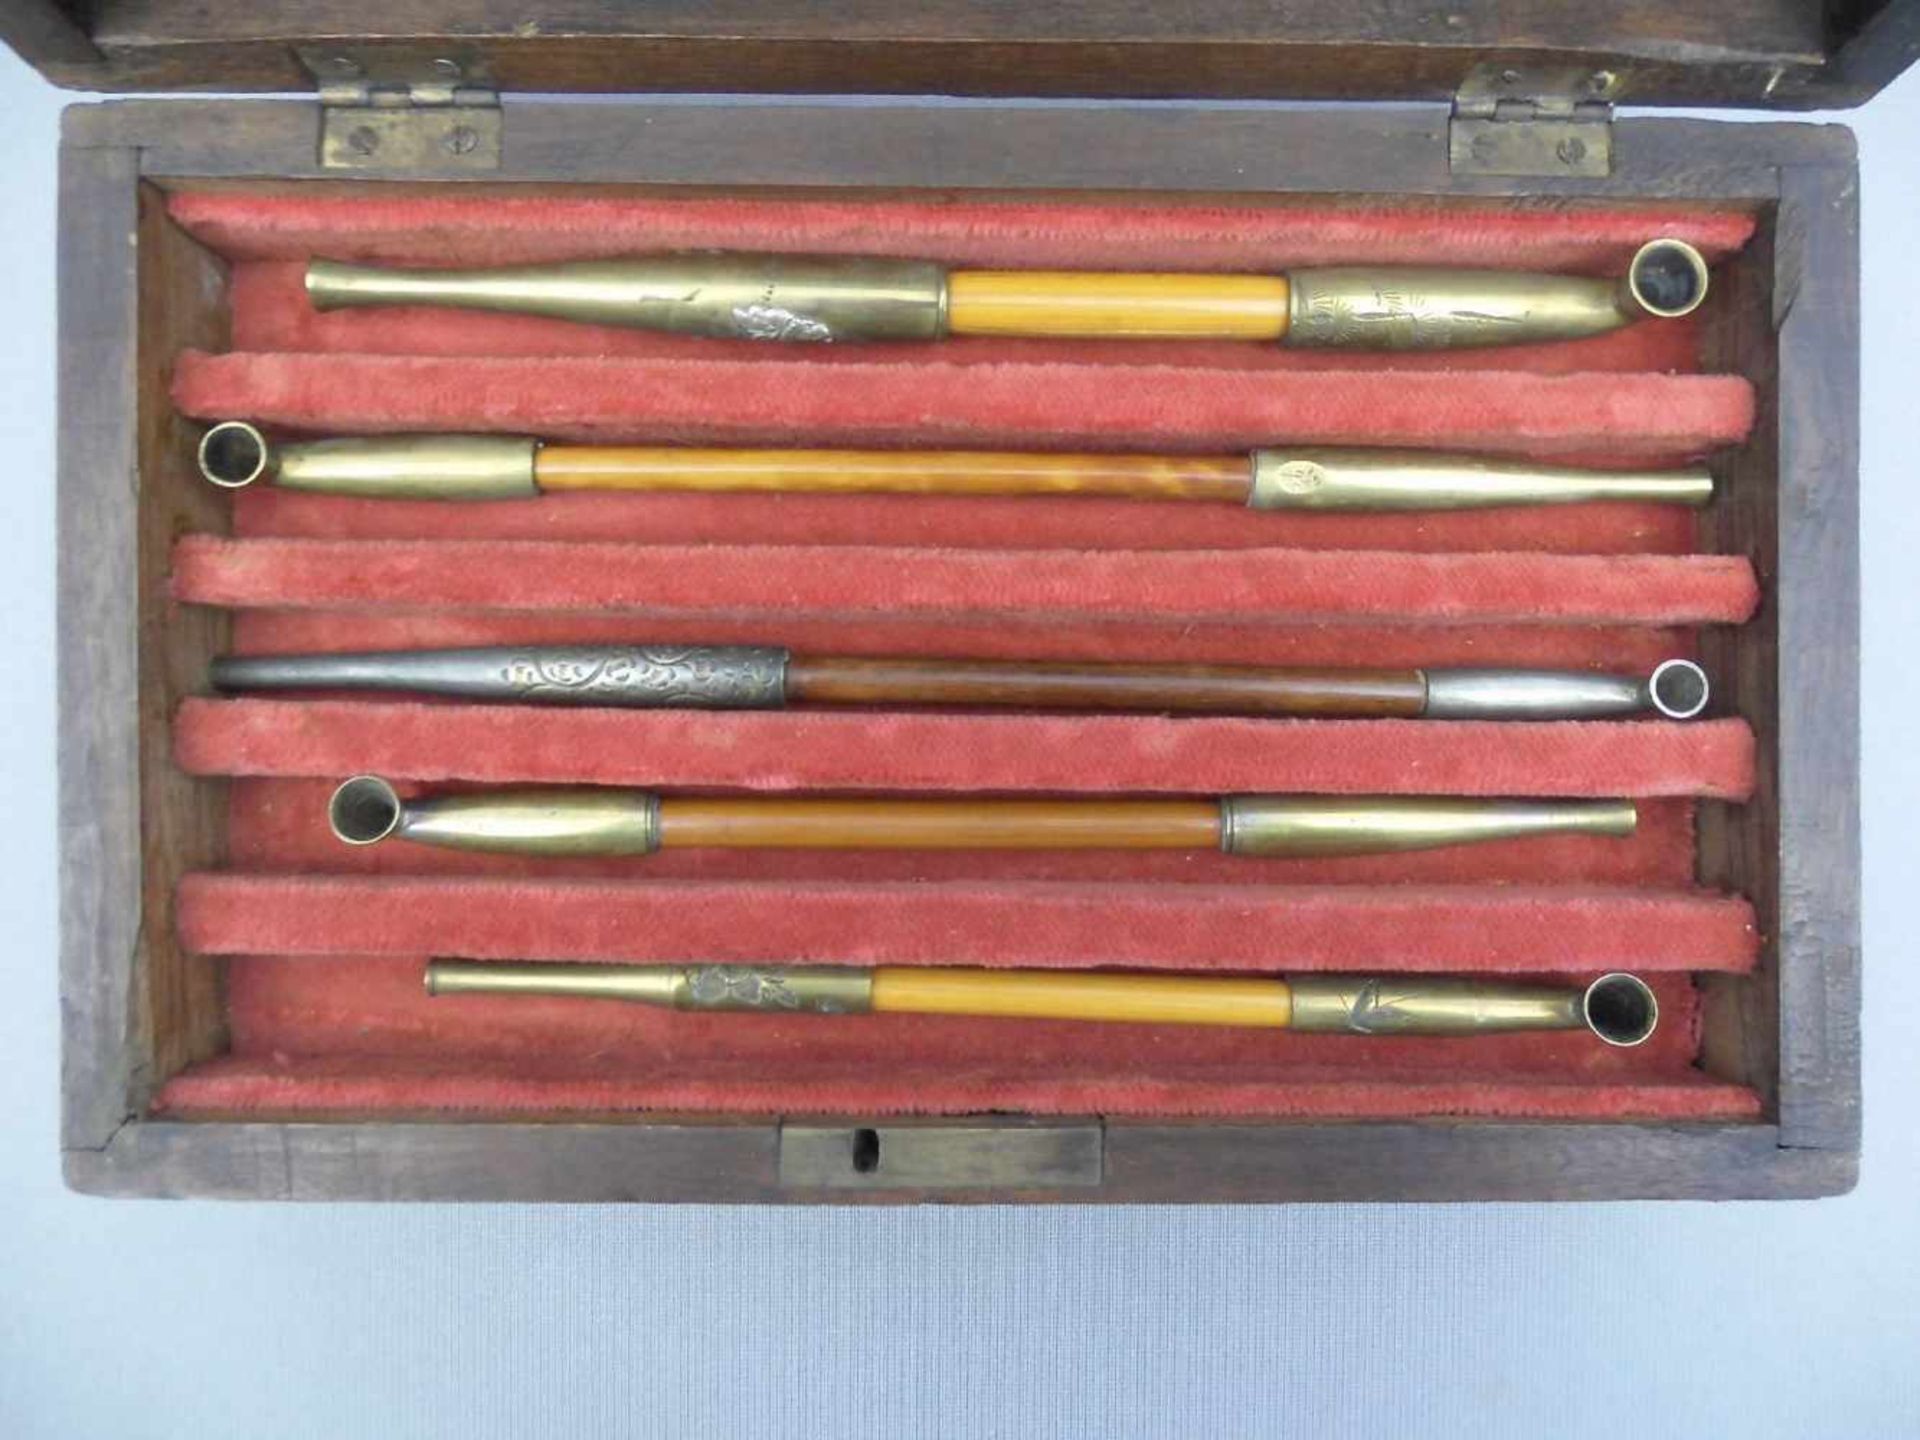 SCHATULLE MIT DRACHENMOTIVEN UND 5 OPIUMPFEIFEN / box with 5 opium pipes, China, Ende 19. Jh.; - Bild 2 aus 4